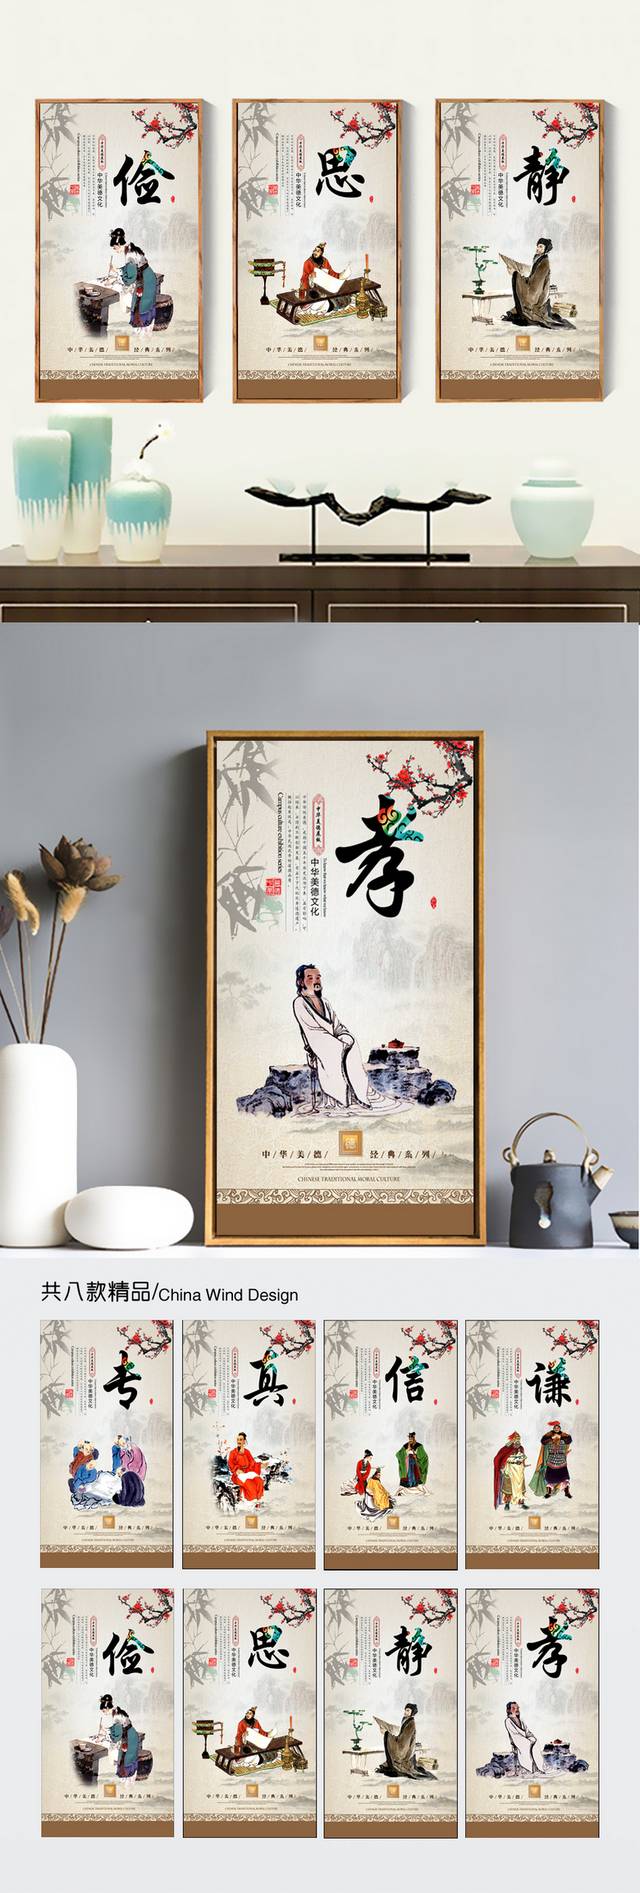 中华美德文化宣传海报设计